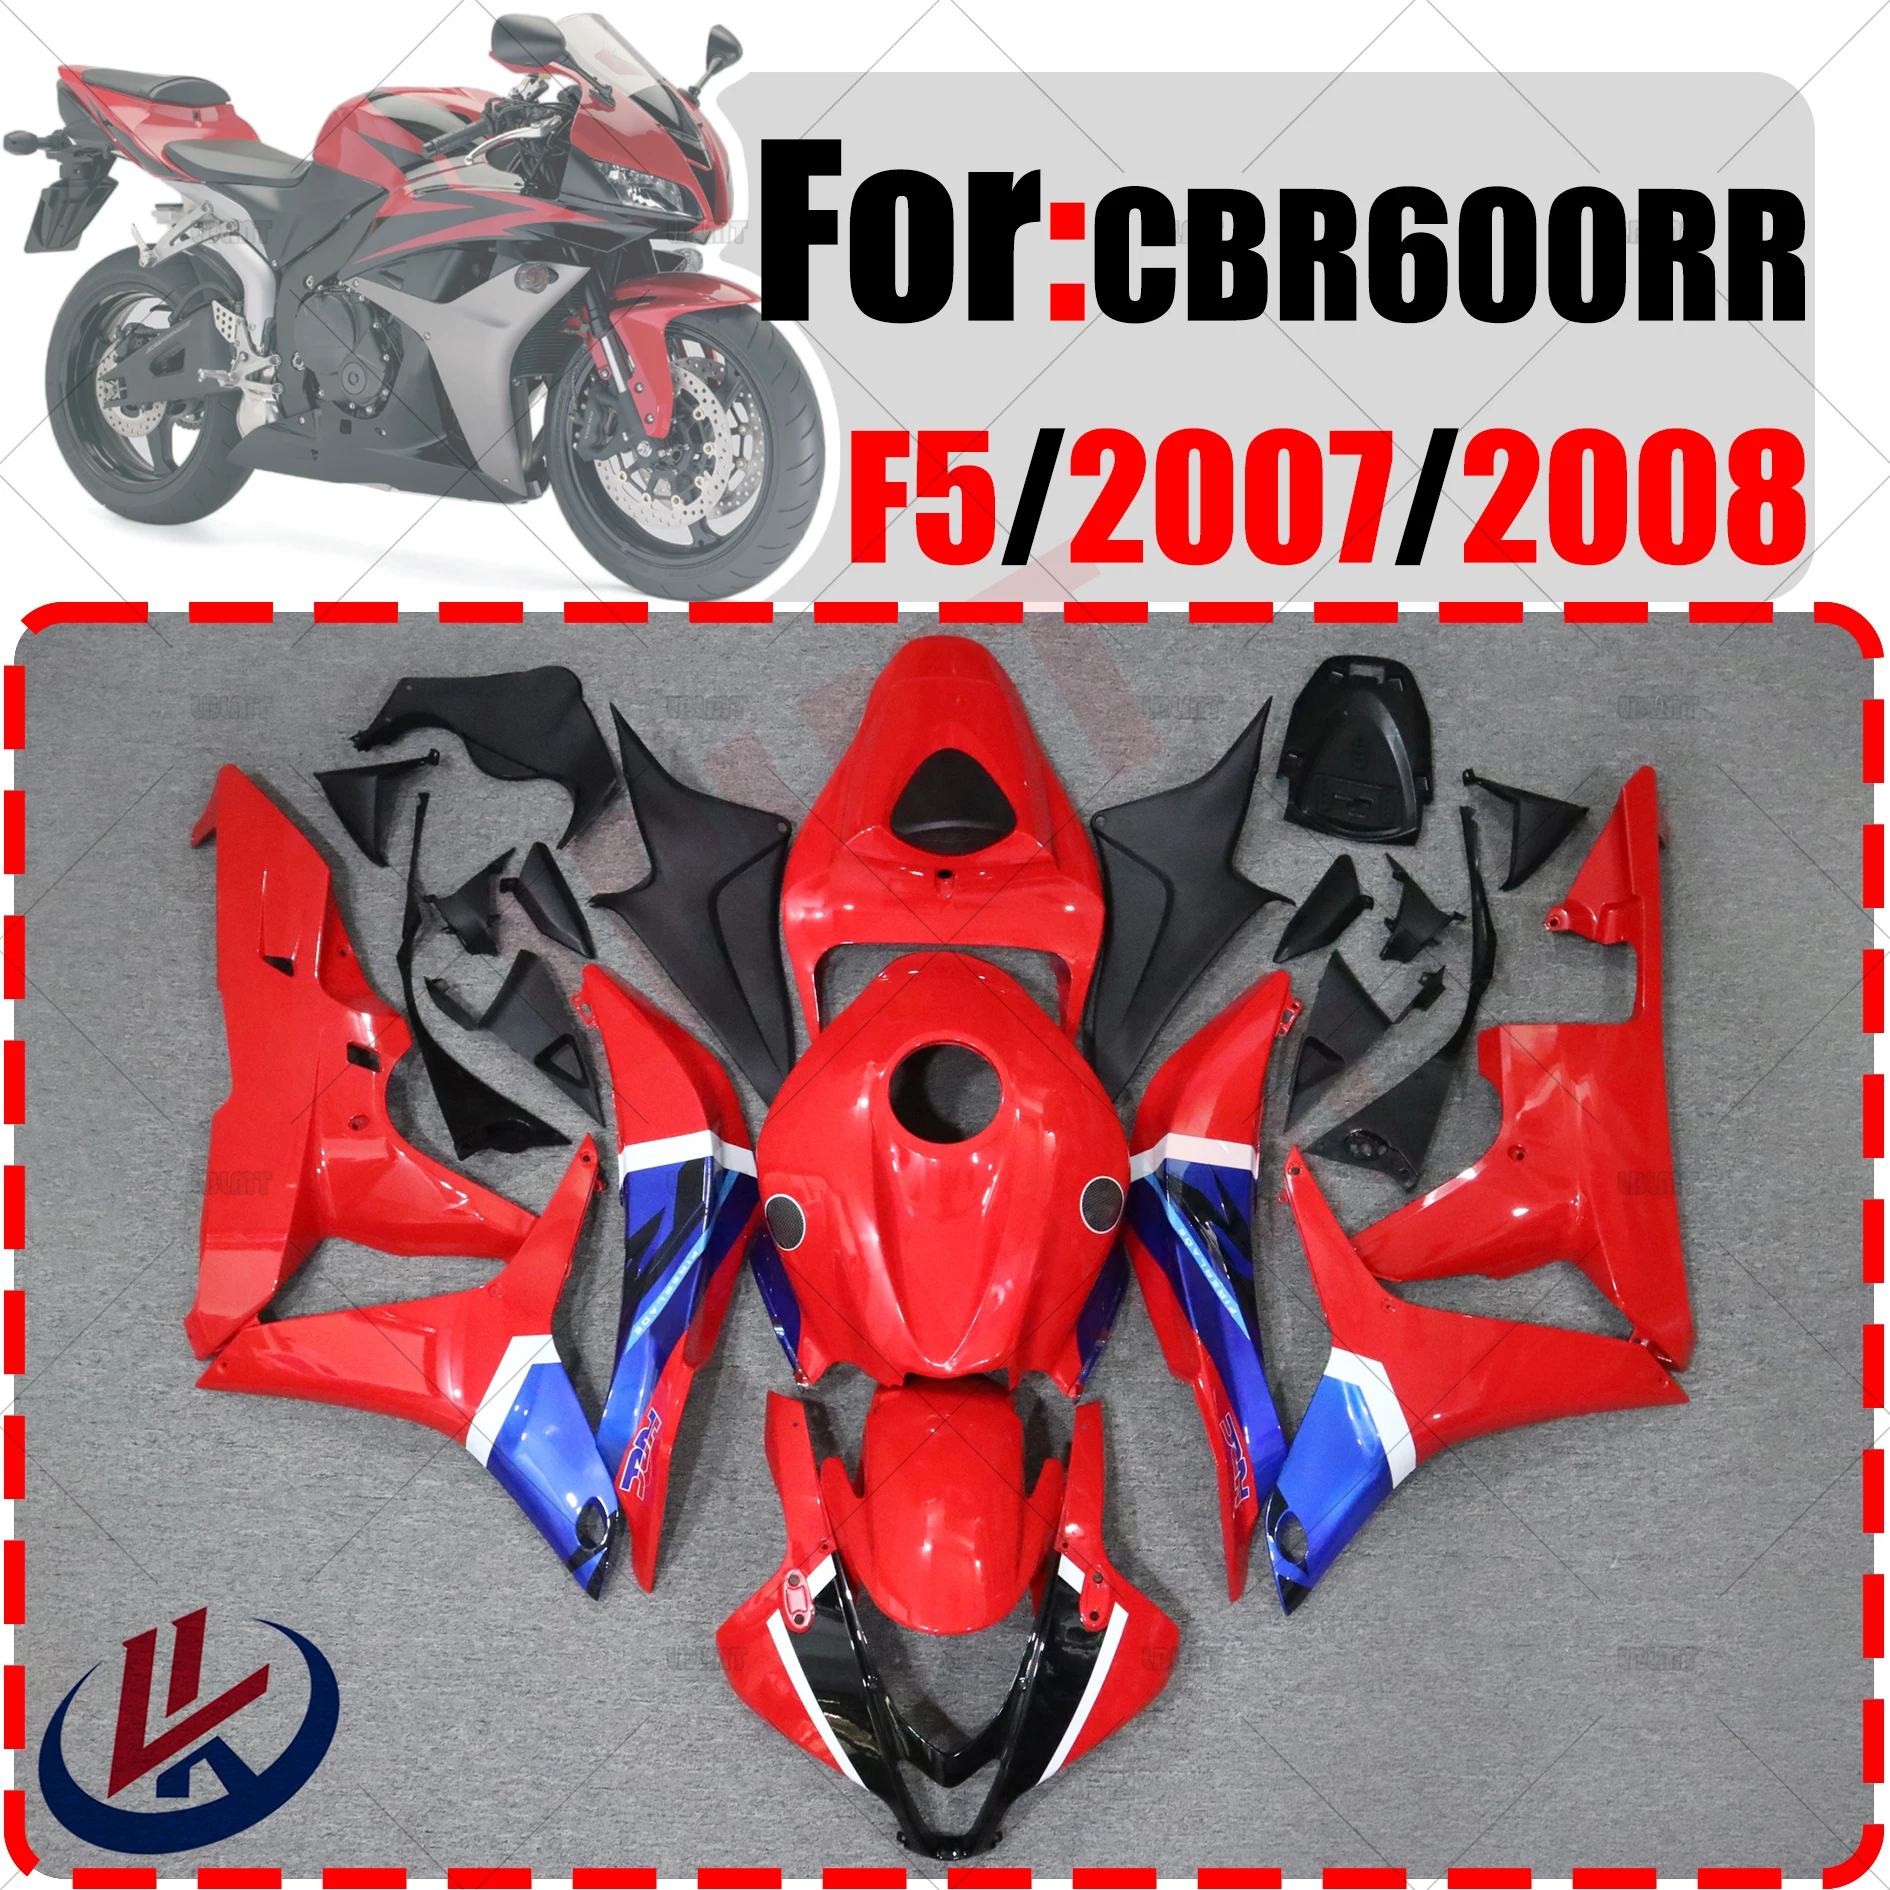 

Комплект обтекателей для мотоцикла, комплект кузова из пластика для HONDA CBR600RR F5 2007 2008, аксессуары, чехол для кузова с полным покрытием